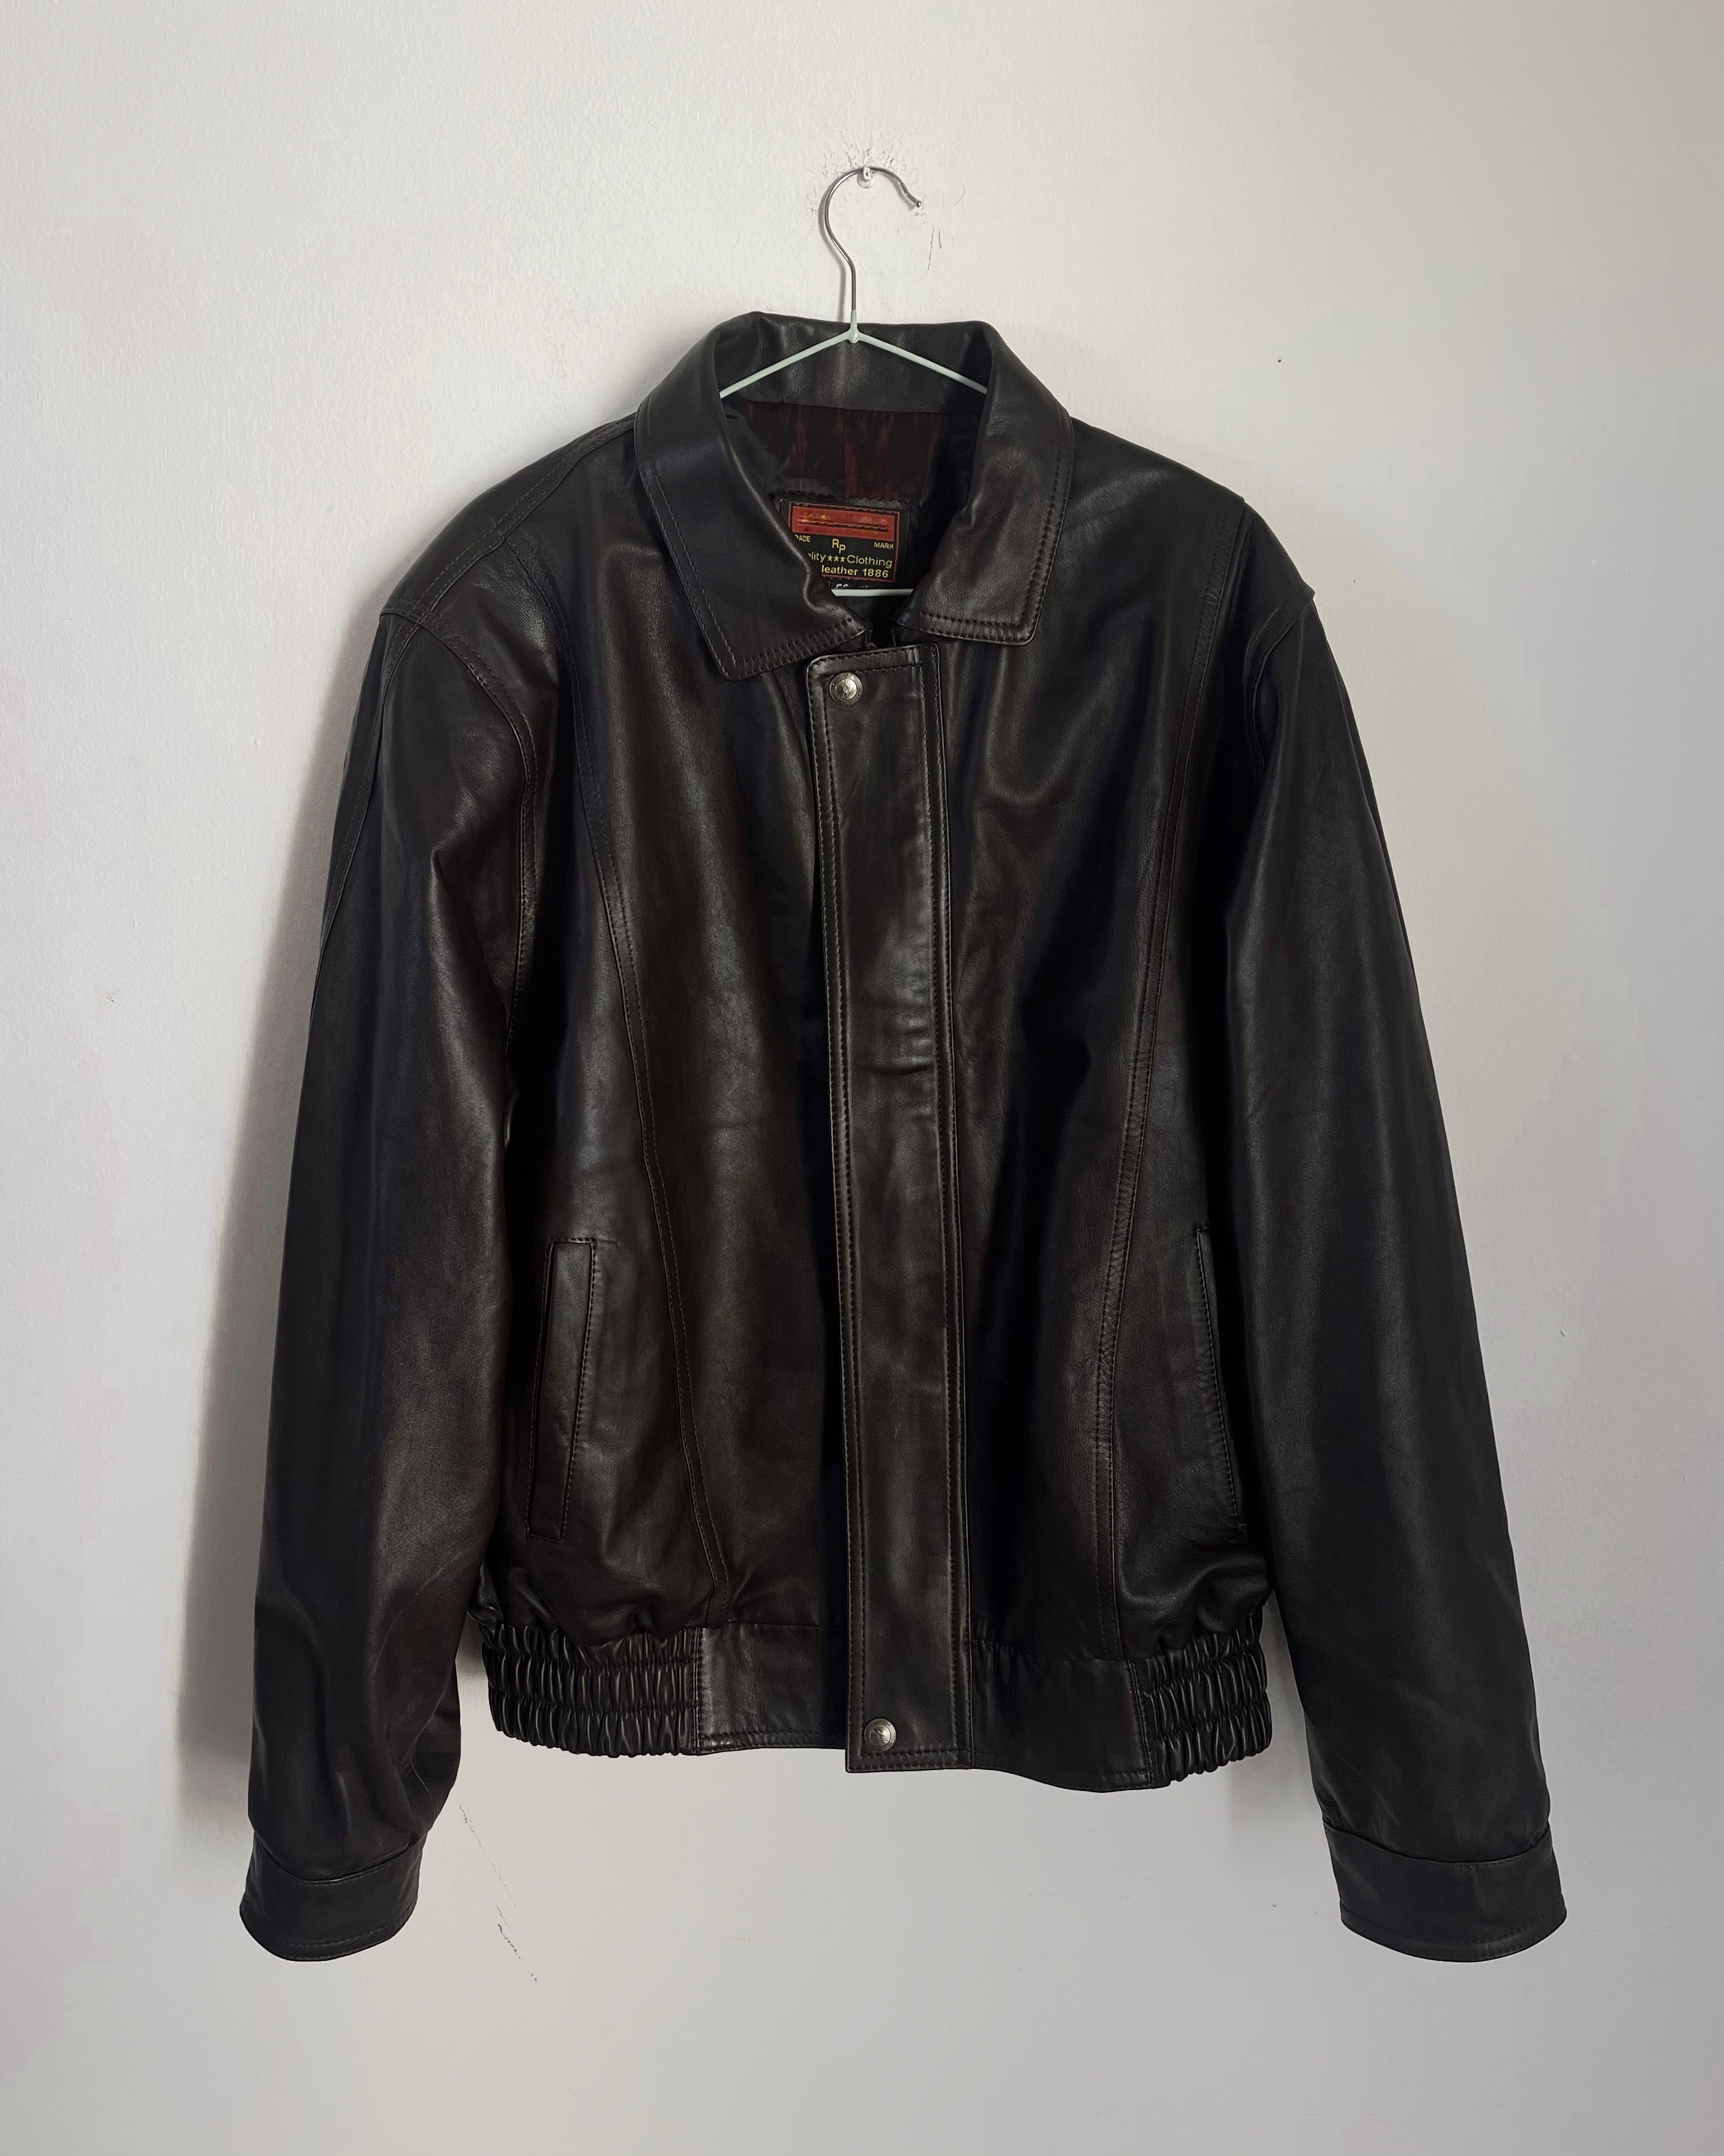 Nappa leather bomber jacket